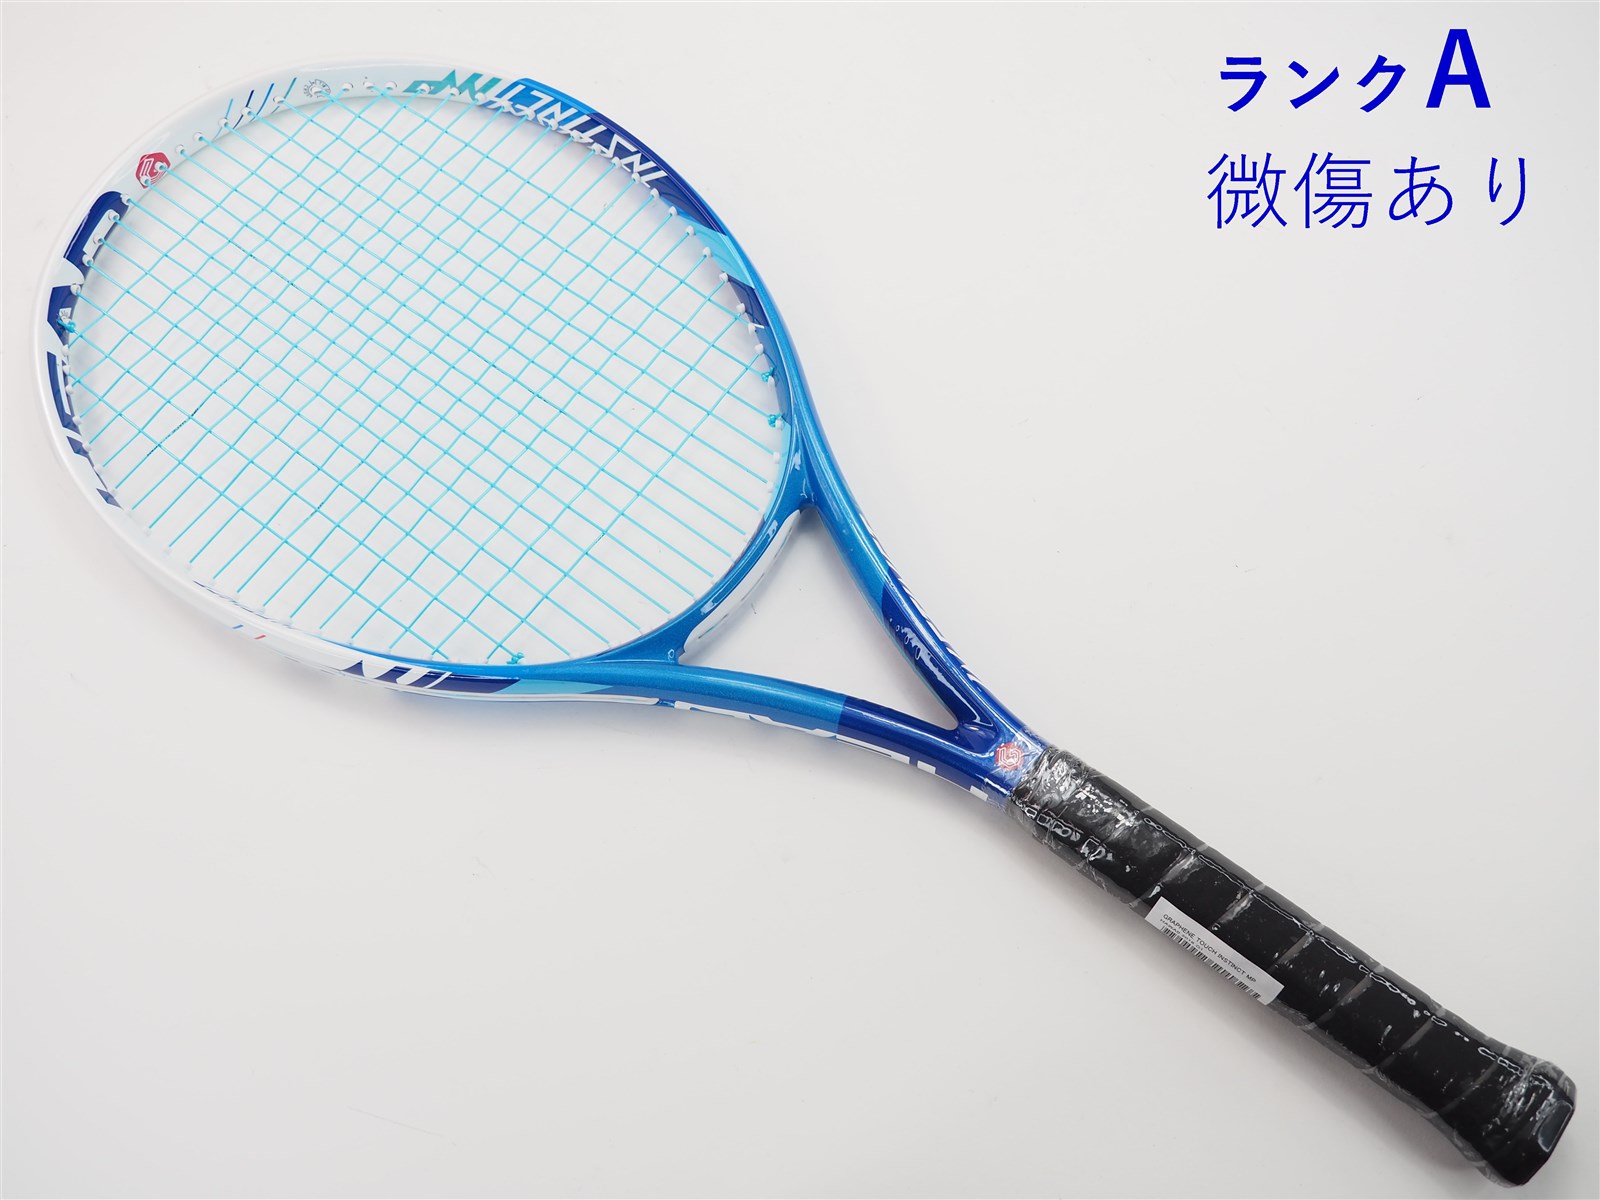 テニスラケット ヘッド グラフィン 360 ラジカル MP 2019年モデル (G3)HEAD GRAPHENE 360 RADICAL MP 2019